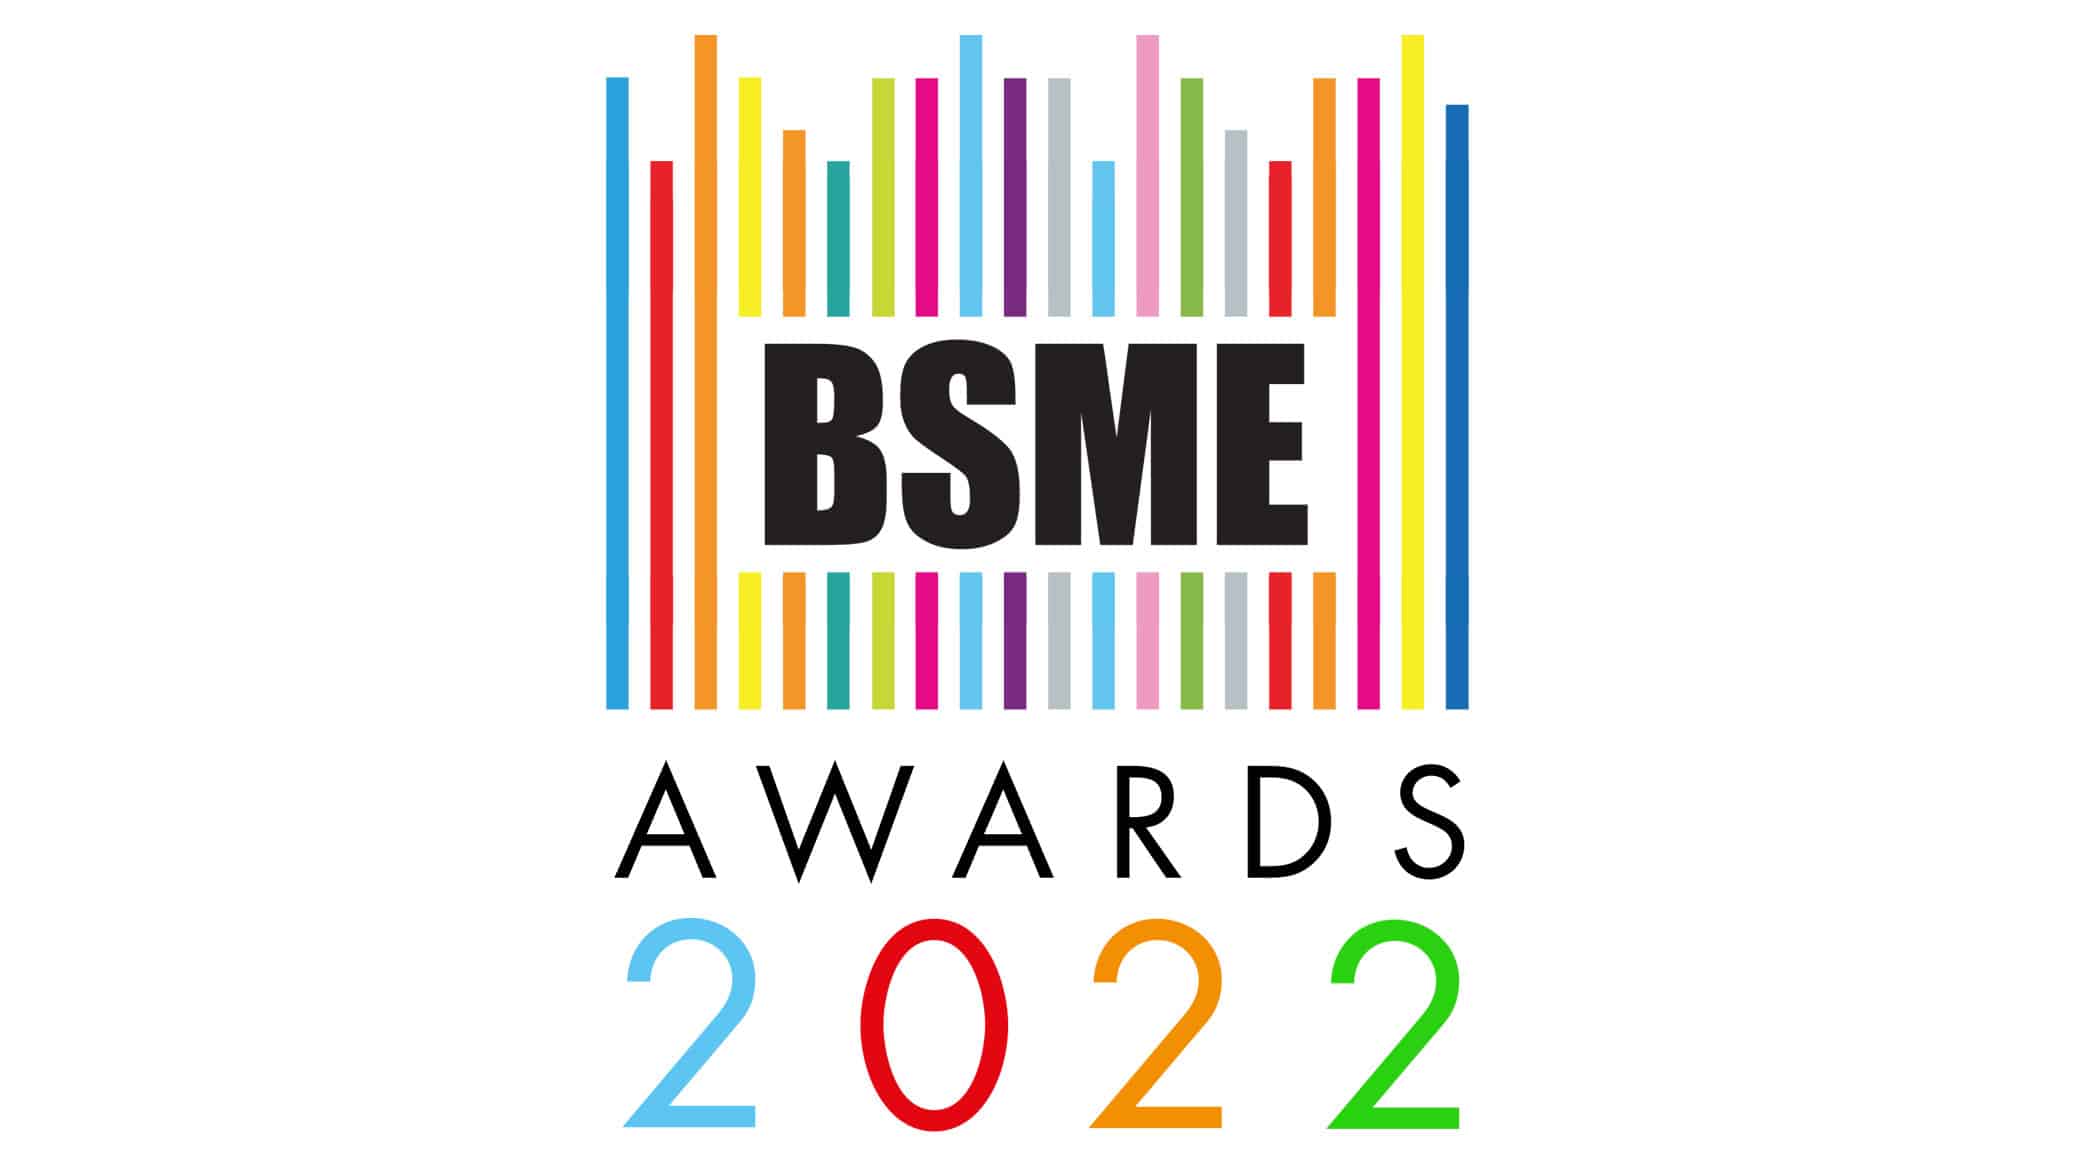 Awards — BSME